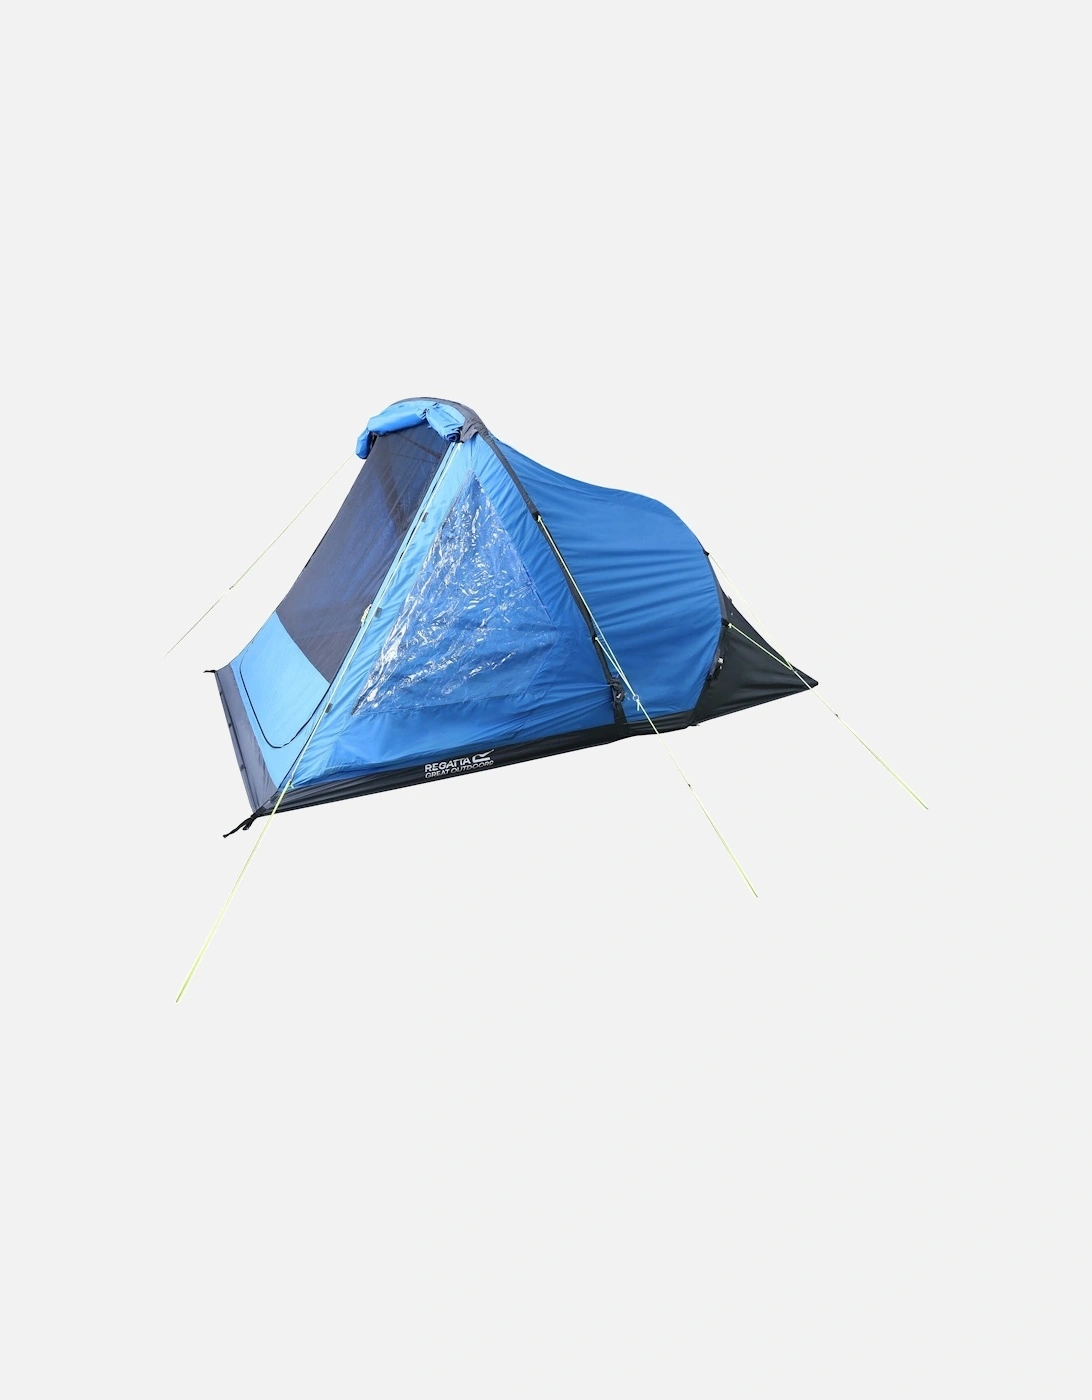 Kolima 2-Man Inflatable Tent - FrnchBl/Ebny - One Size, 8 of 7